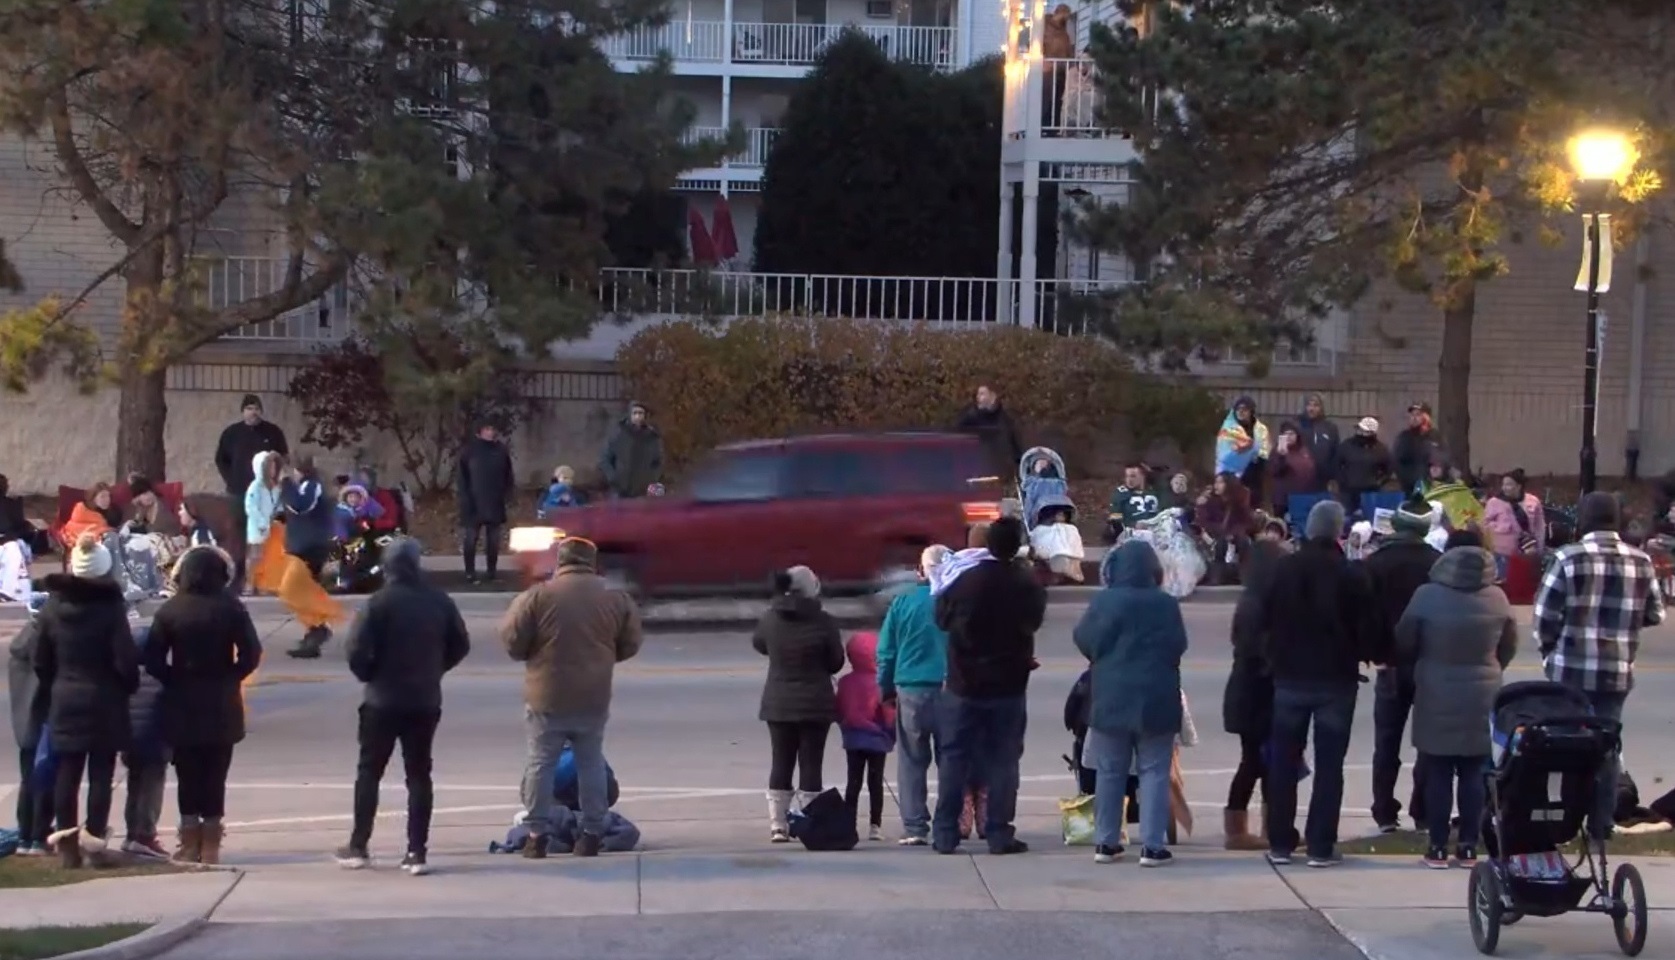 Captura de un vídeo en el que se ve el todoterreno rojo recorriendo la calle del desfile a gran velocidad.